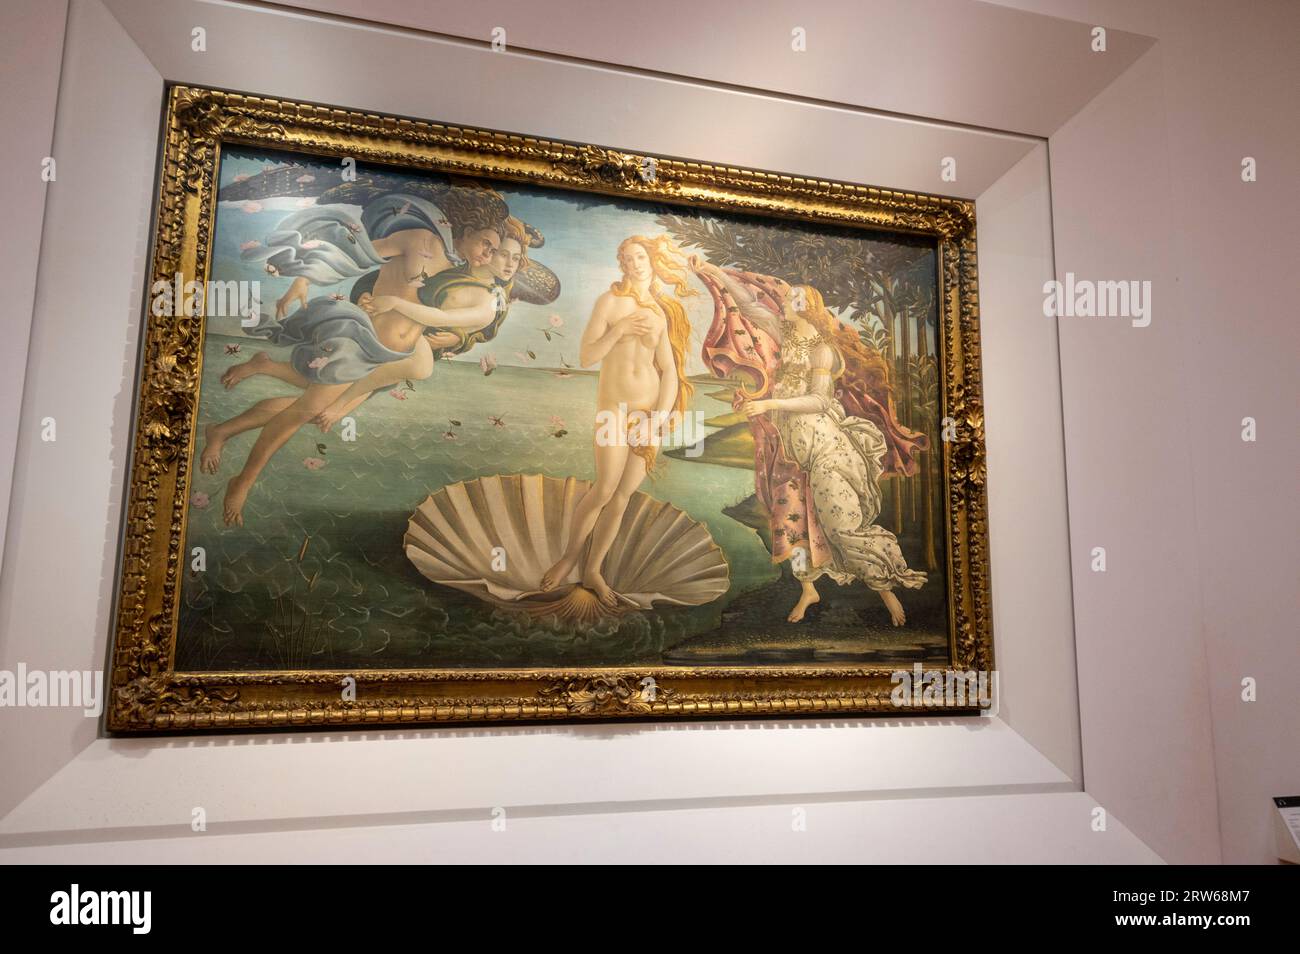 Una delle attrazioni artistiche più significative della galleria d'arte degli Uffizi è la nascita di Venere, che mostra la dea, Venere, in piedi su una gigantesca conchiglia di capesante. La Foto Stock